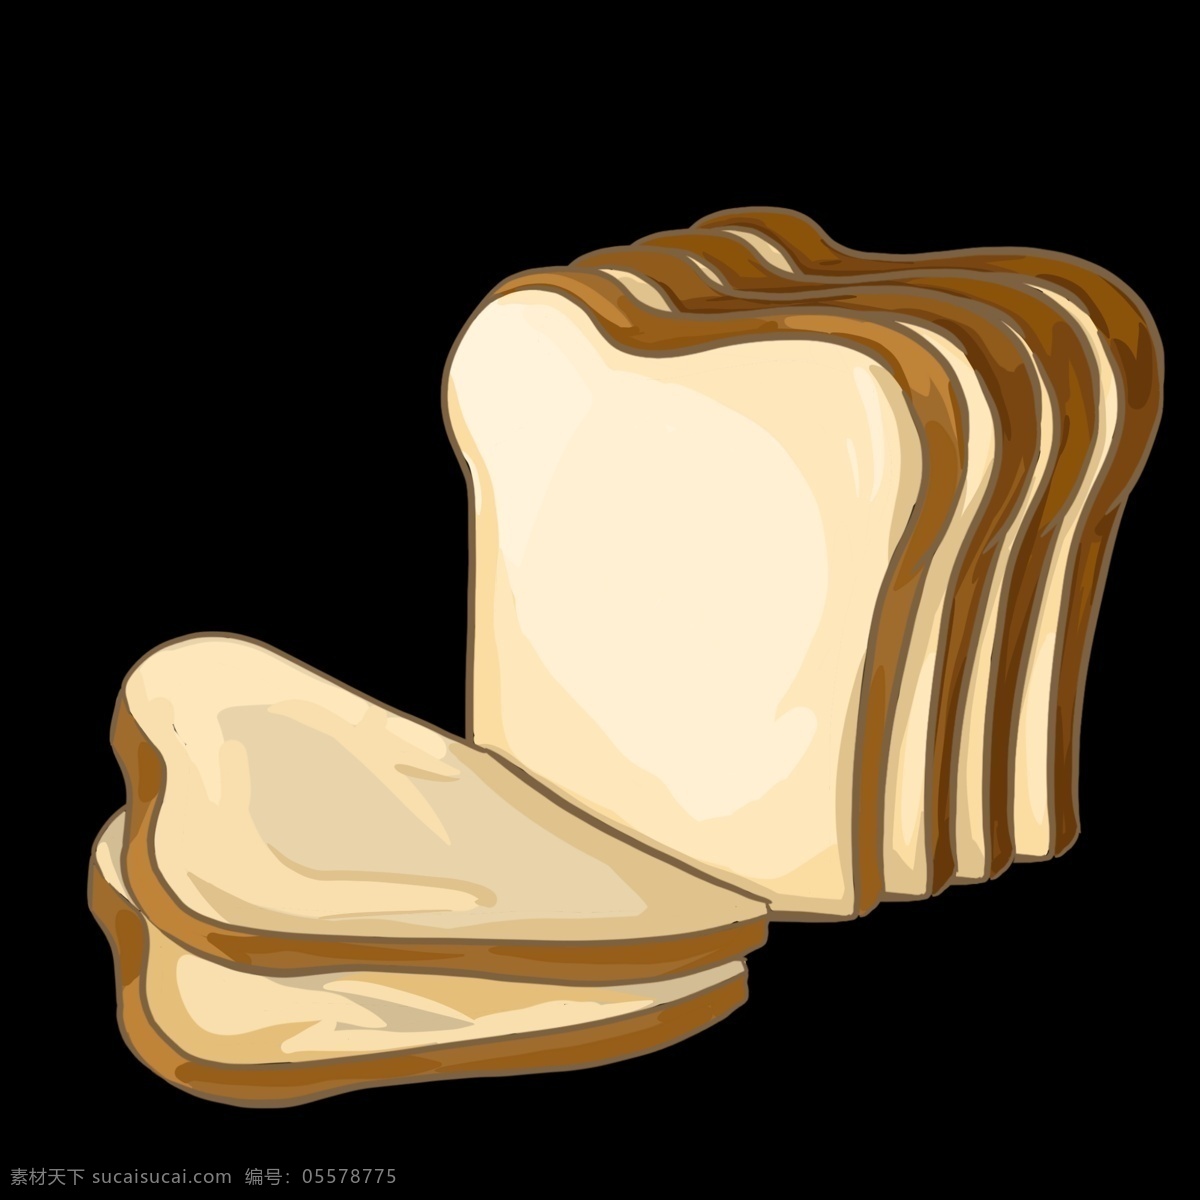 美食 面包 切片 卡通 食品 切片面包 面包片